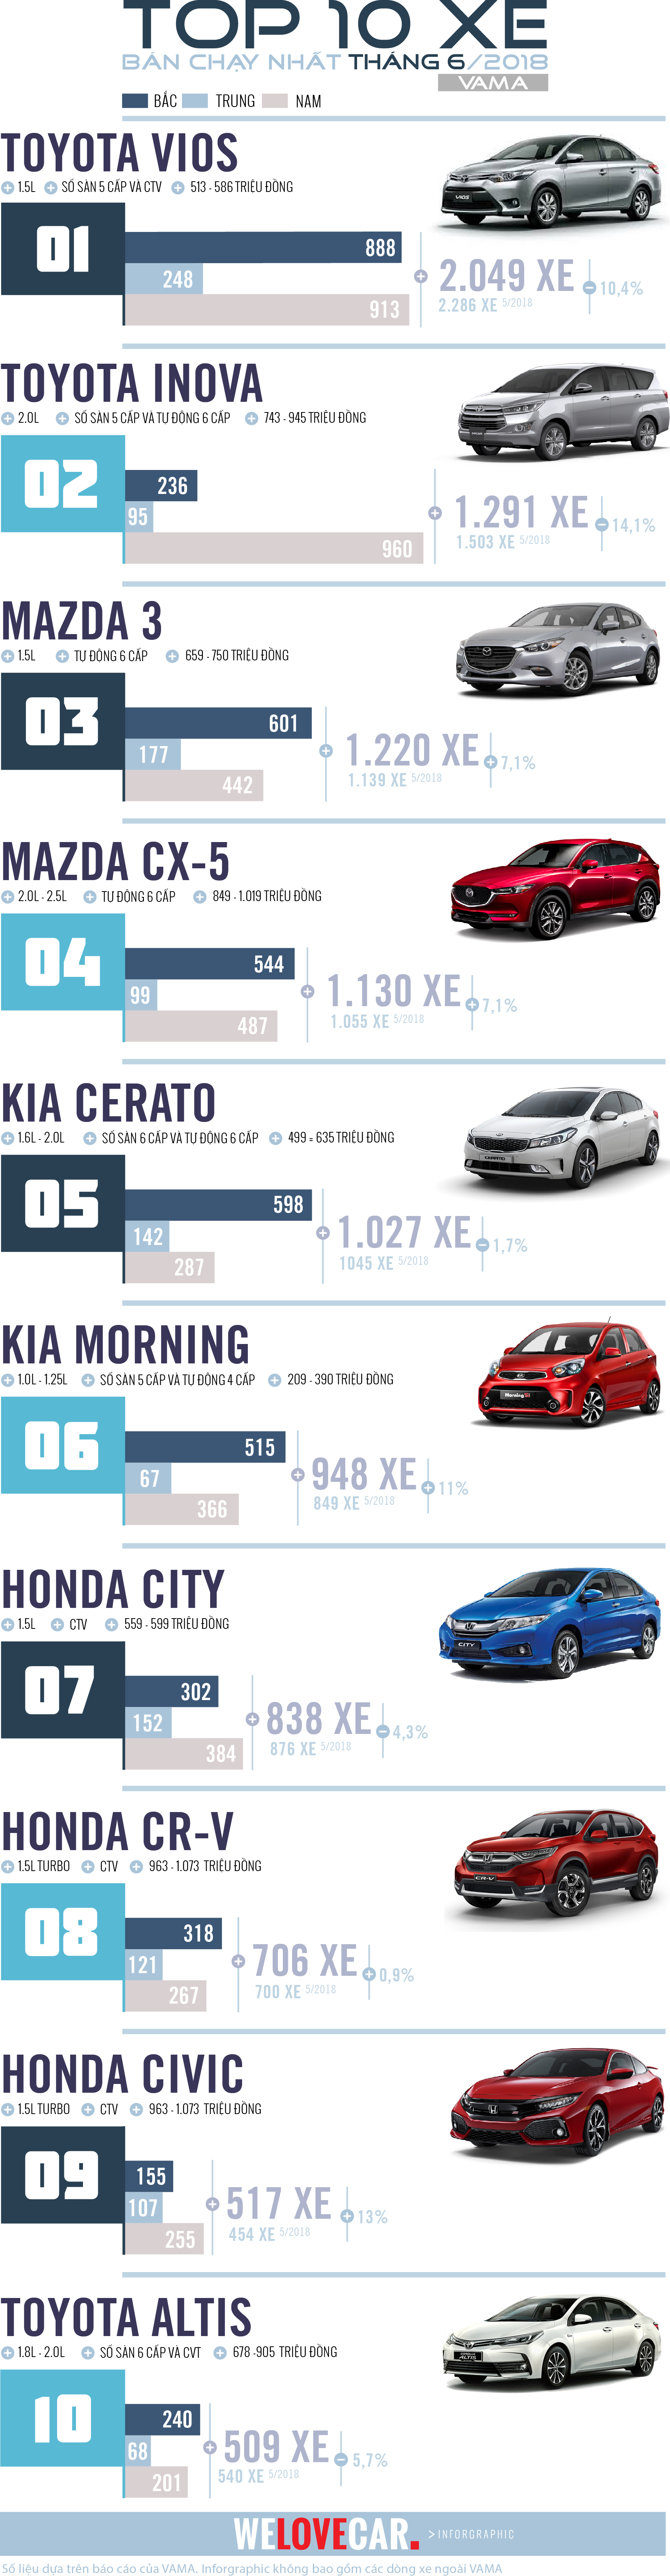 [Inforgraphic] Top 10 xe bán chạy của tháng 6-2018